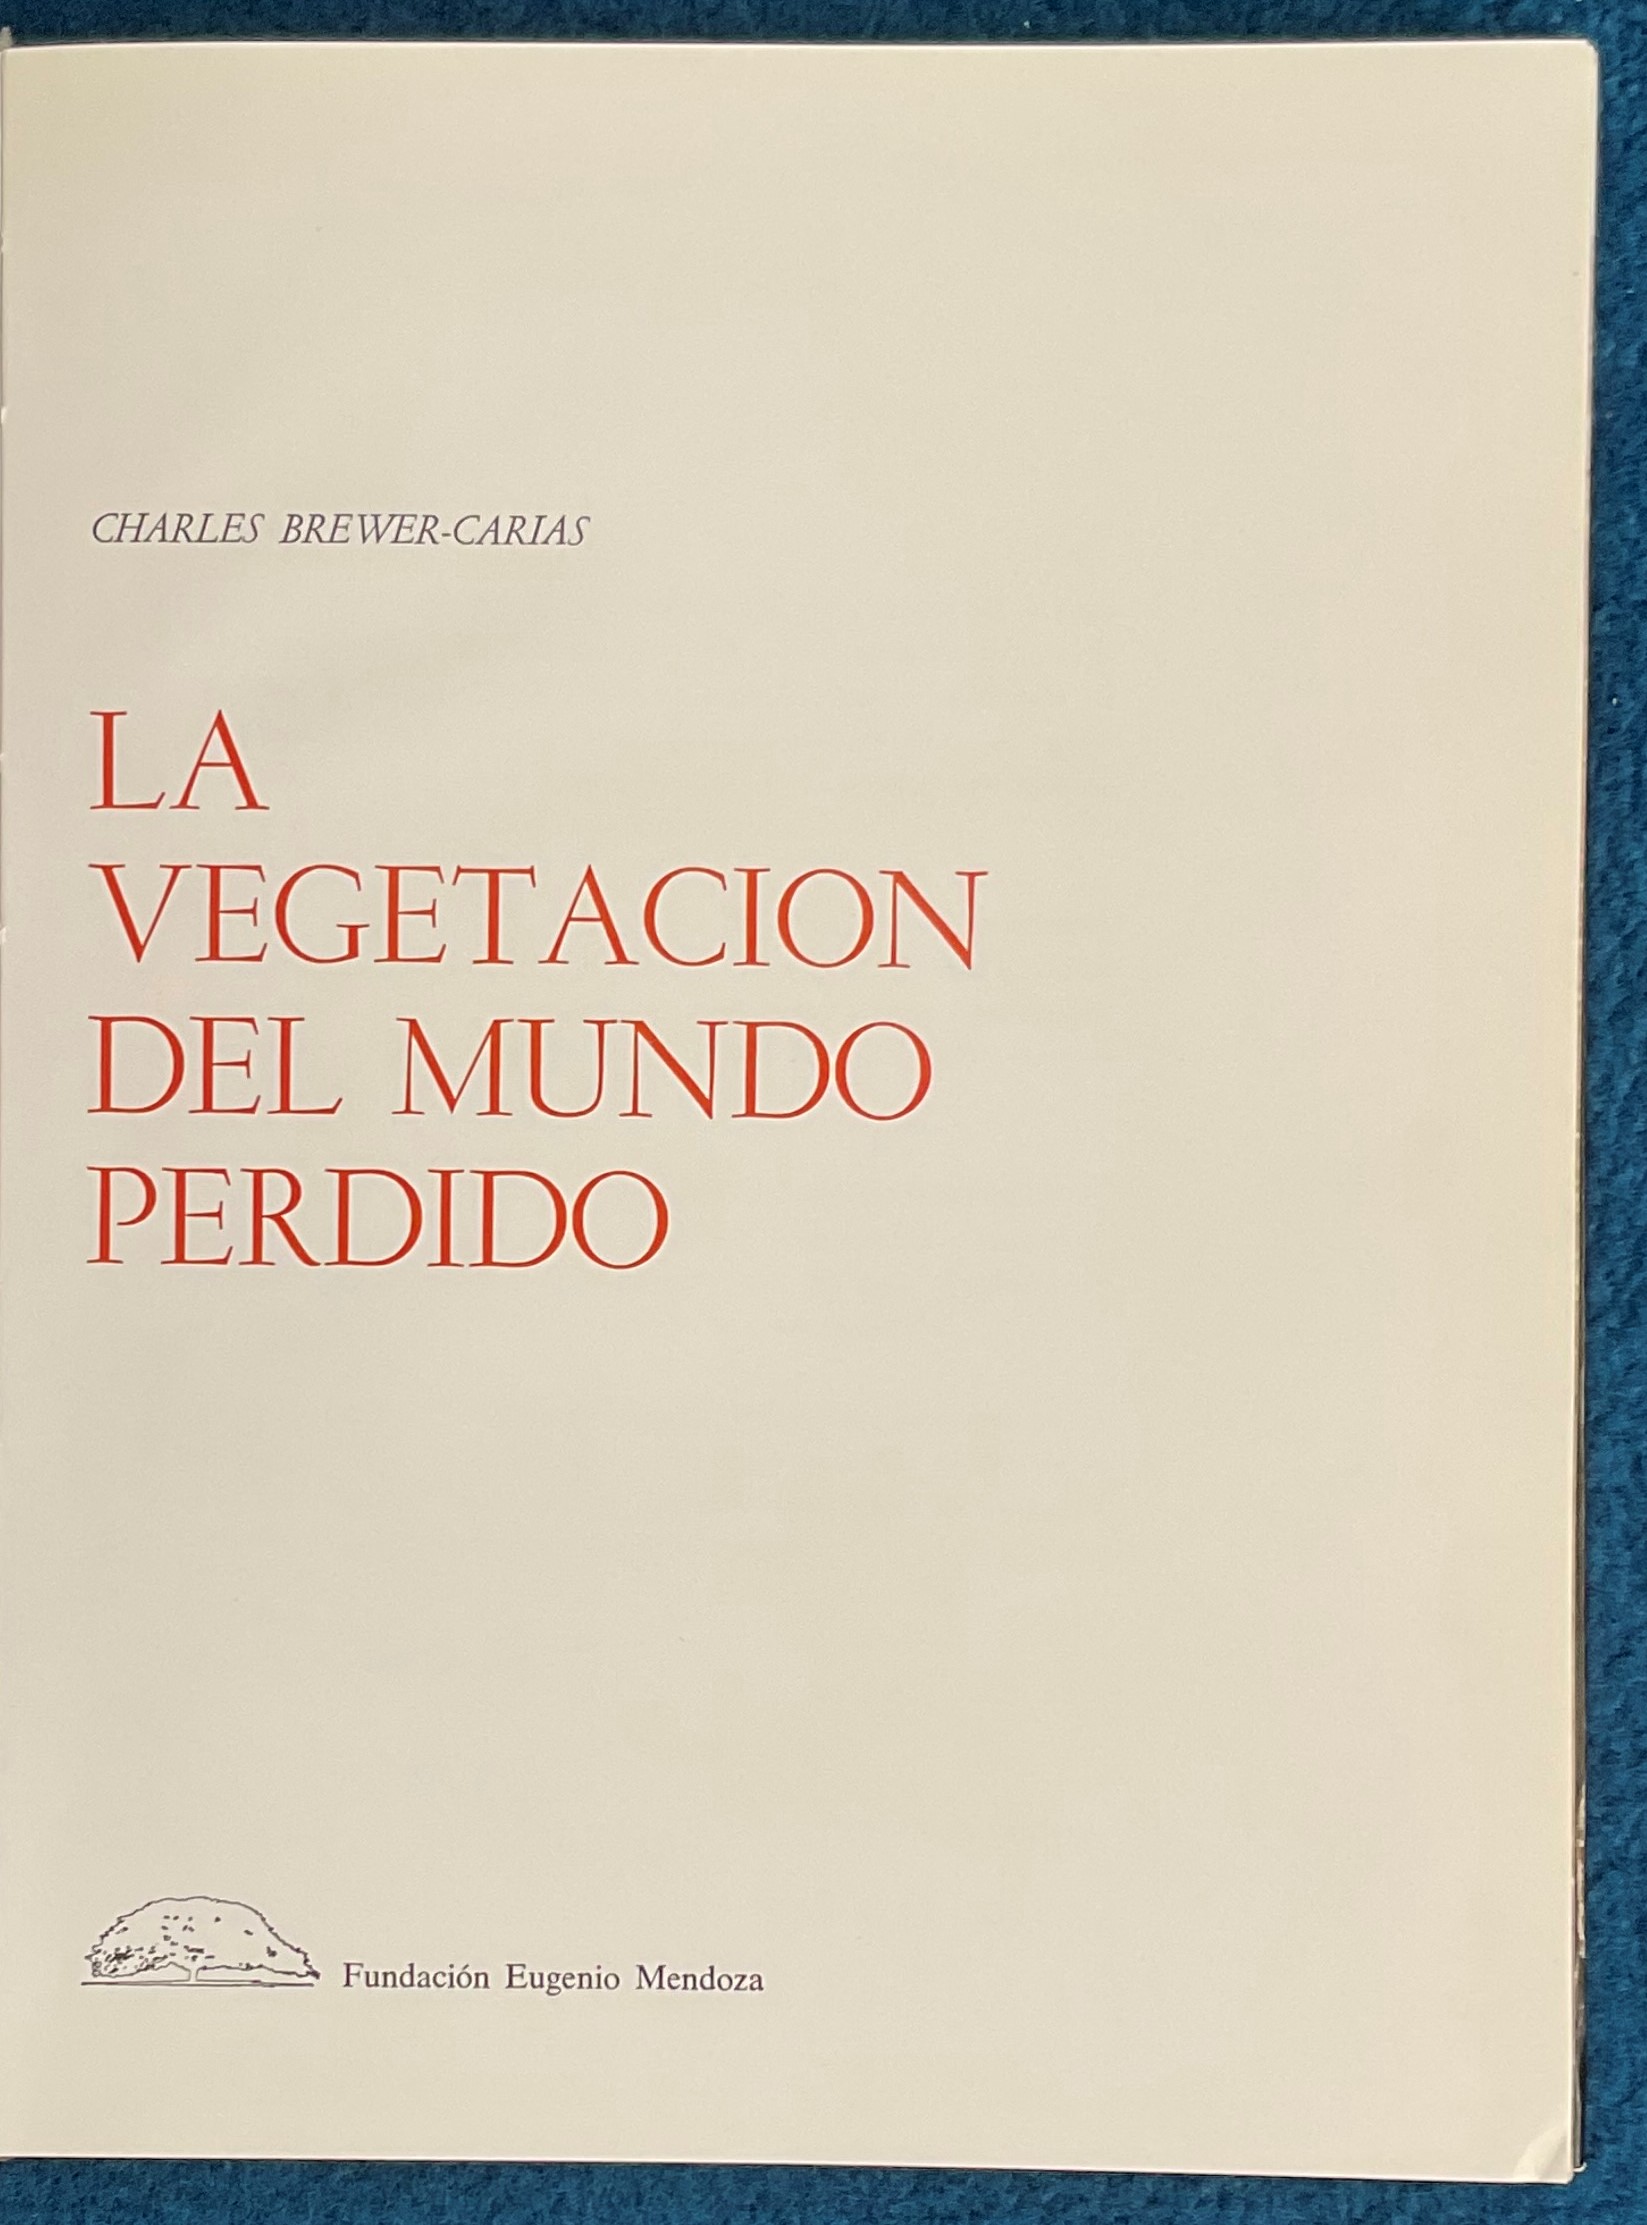 La Vegetacion Del Mundo Perdido by Charles Brewer Carias Hardback Book 1978 published by Fundacion - Image 2 of 2